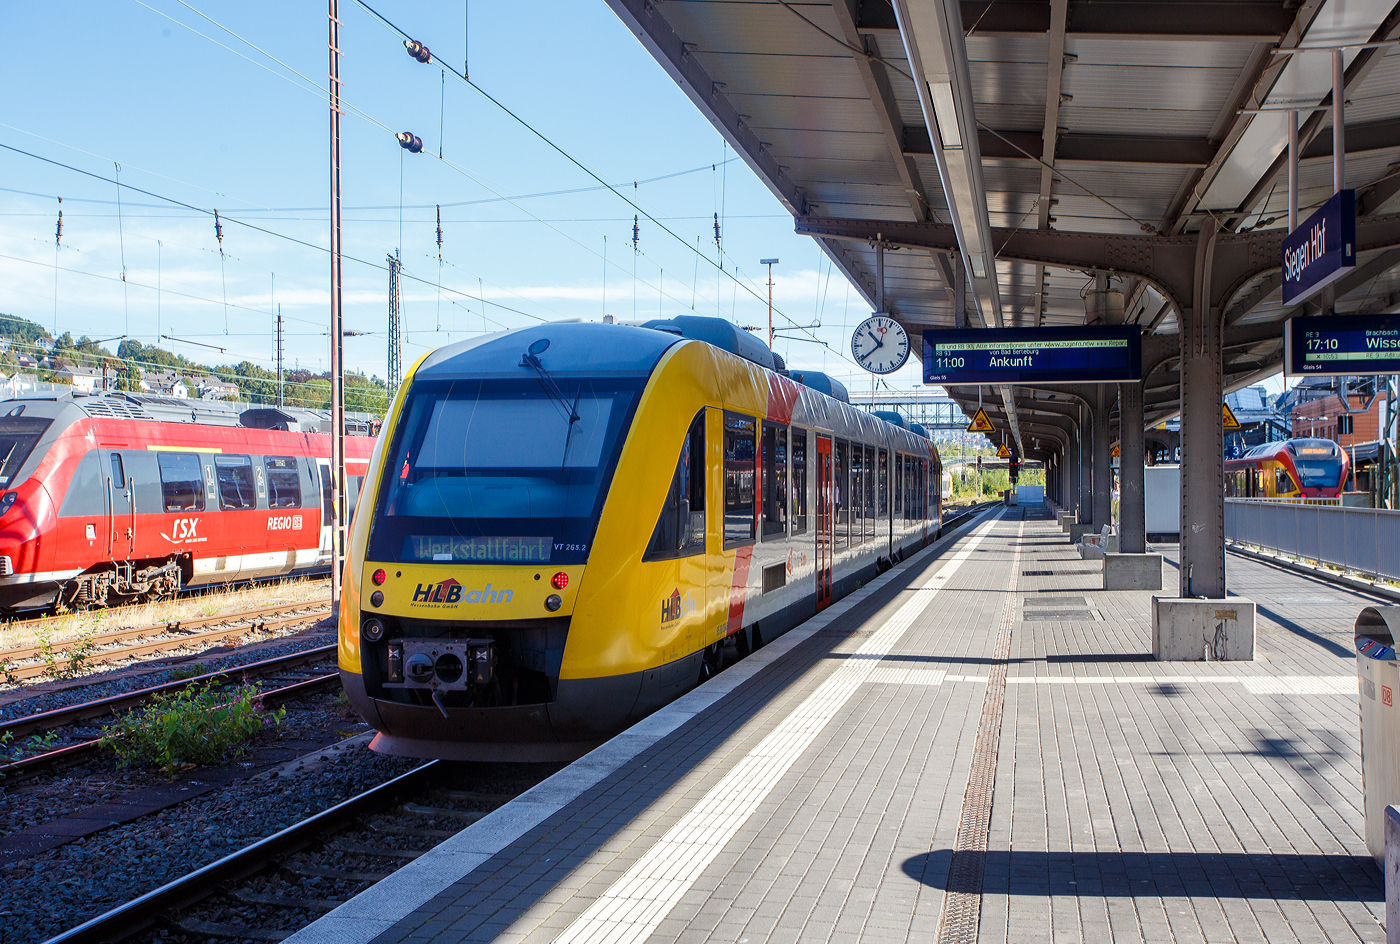 An diesem Wochenende war bundesweit an vielen Orten im Rahmen der  Europäische Mobilitätswoche  der „Tag der Schiene 2023“ so auch in Siegen beim KSW Bahnhof Siegen-Eintracht war am 17.09.2023 Tag der offenen Tür. Für die Anfahrt gab es kostenlose Pendelfahrten zwischen den Veranstaltungsorten Siegen Hbf und Siegen Eintracht. So hat hier der VT 265 (95 80 0648 165-8 D-HEB /95 80 0648 665-7 D-HEB), ein Alstom Coradia LINT 41 der HLB (Hessische Landesbahn GmbH), auf Werkstattfahrt den Hbf Siegen erreicht. Der uns gleichdrauf zum Bahnhof Siegen-Eintracht bringt, wo sich u.a. auch die Werkstätten für die HLN befinden (daher zugzielanzeige „Werkstattfahrt“).